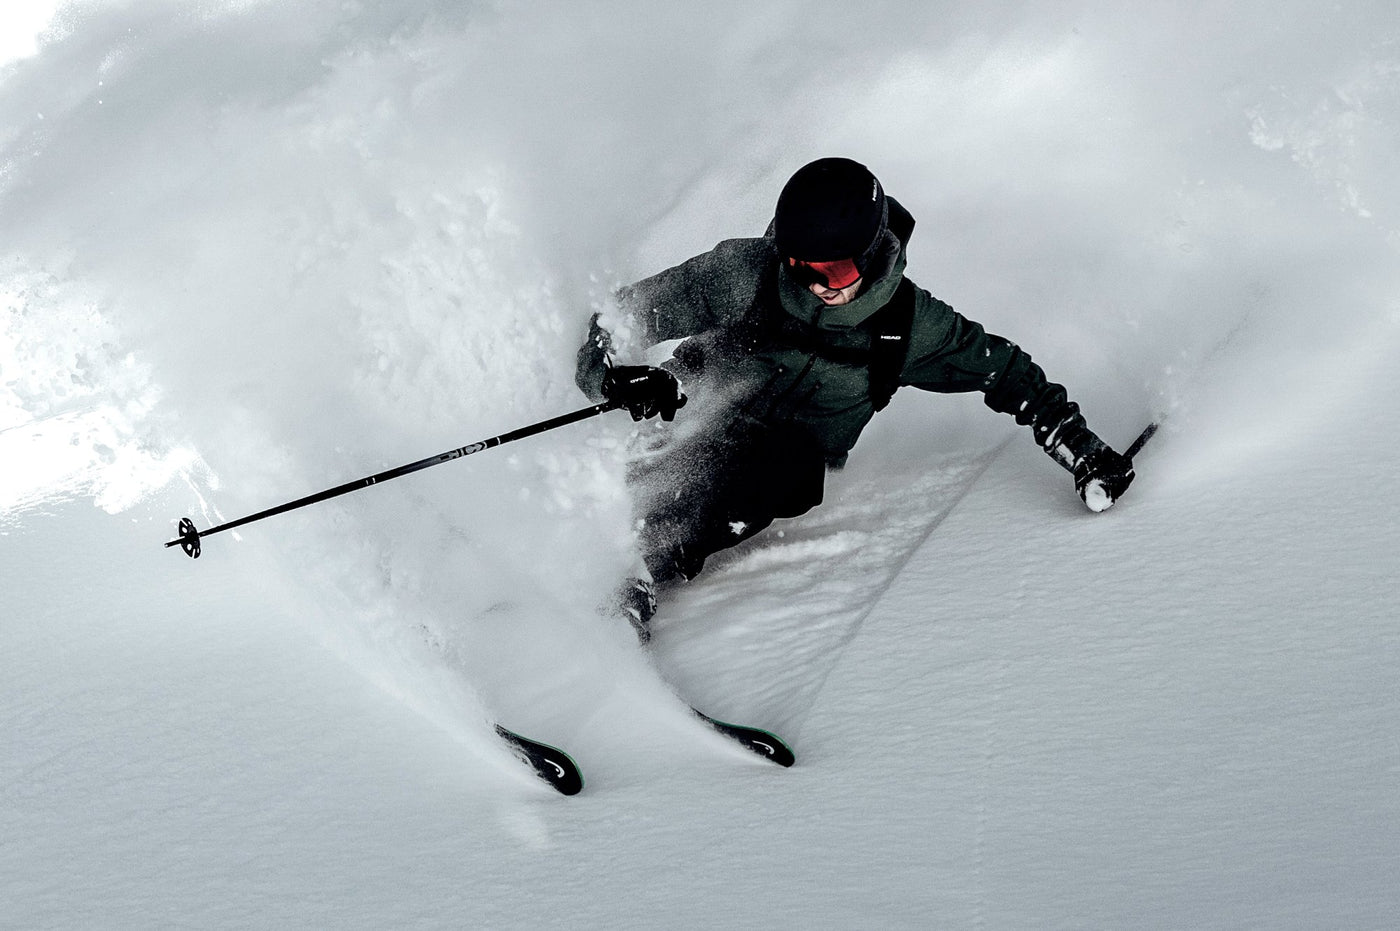 Power Ski - Mann mit Skihelm fährt auf Freeride Ski durch Tiefschnee